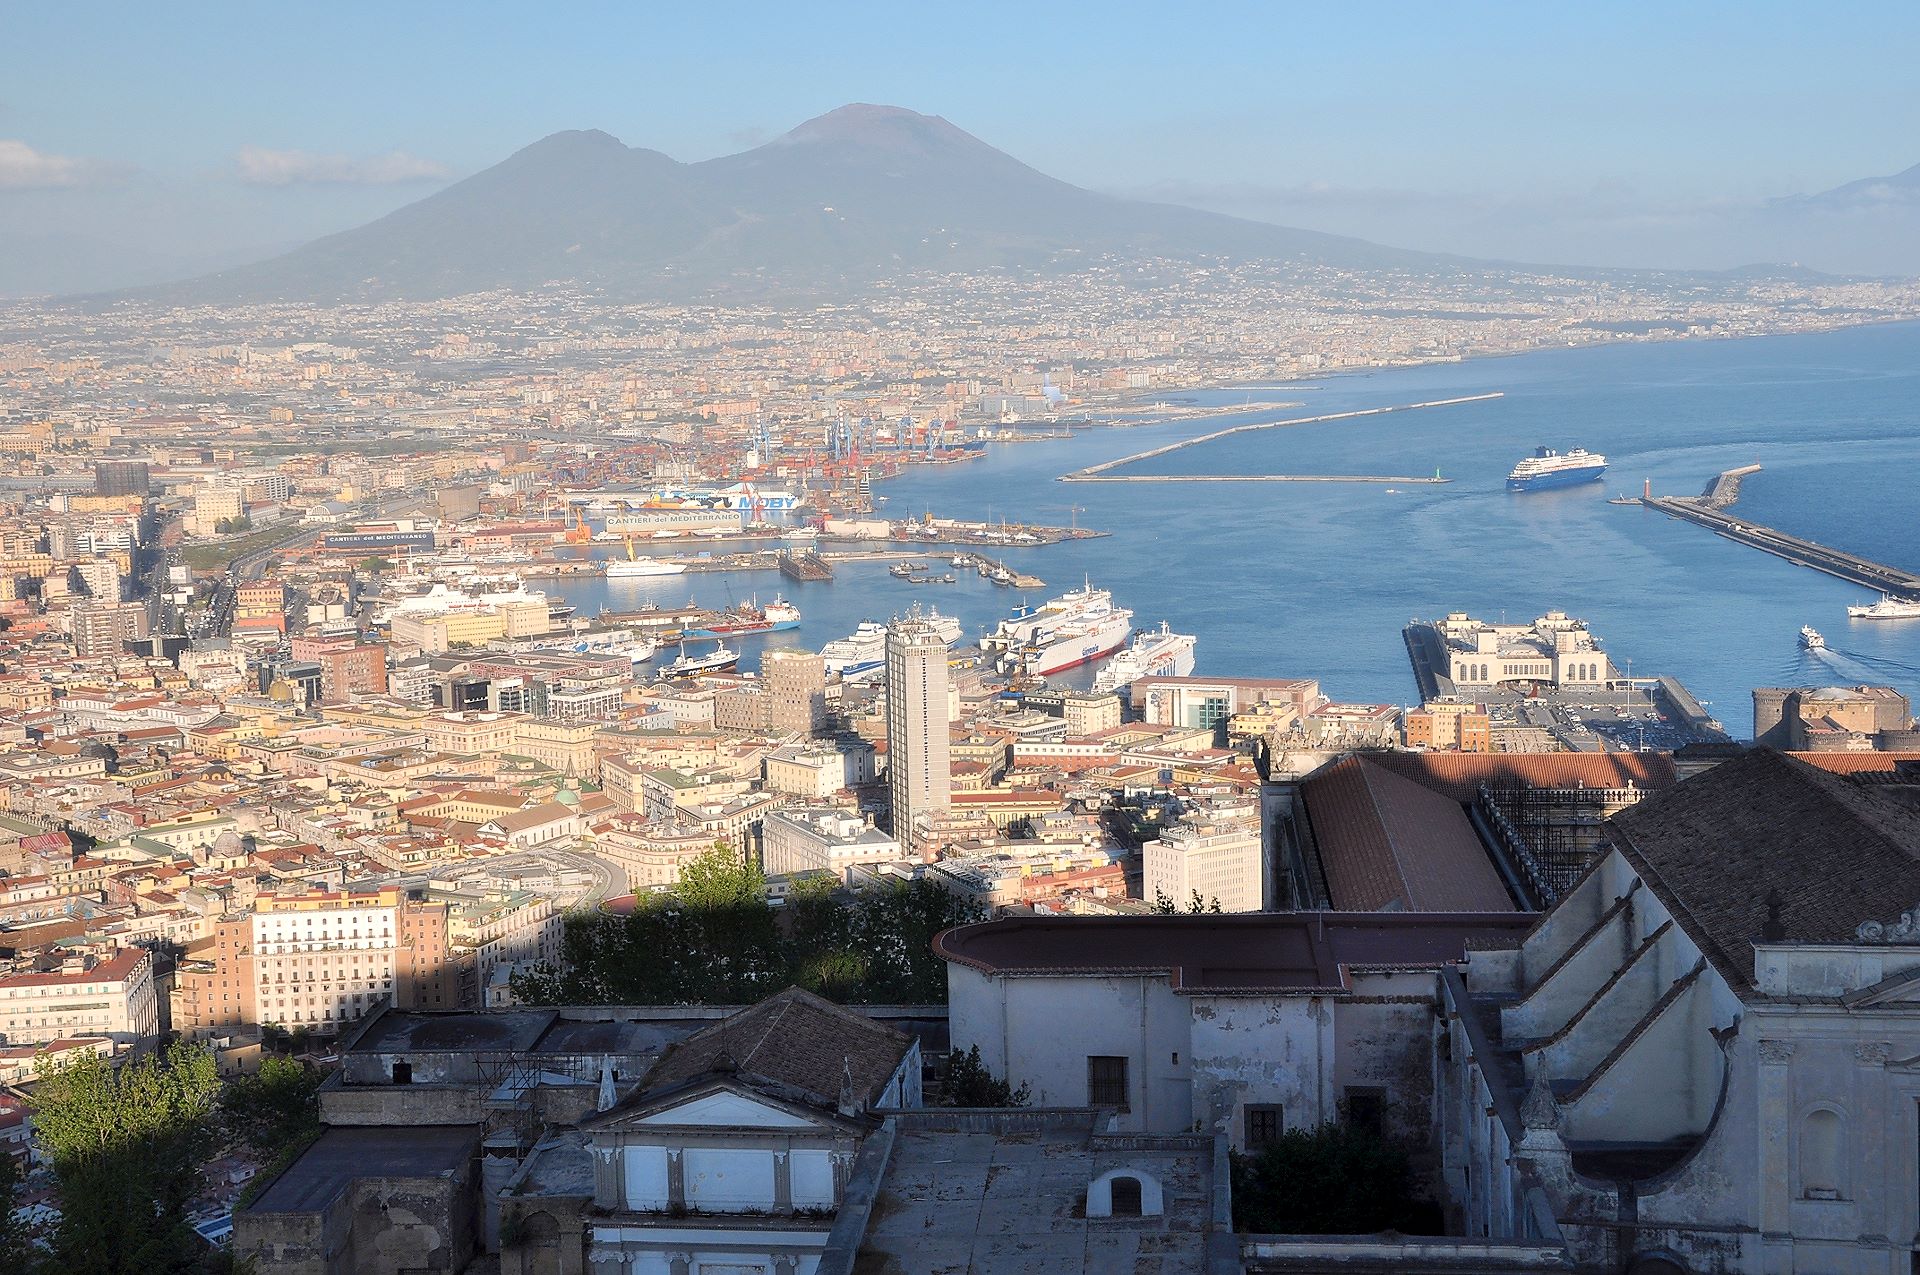 Stadtzentrum und Hafen von Neapel mit dem Vesuv im Hintergrund